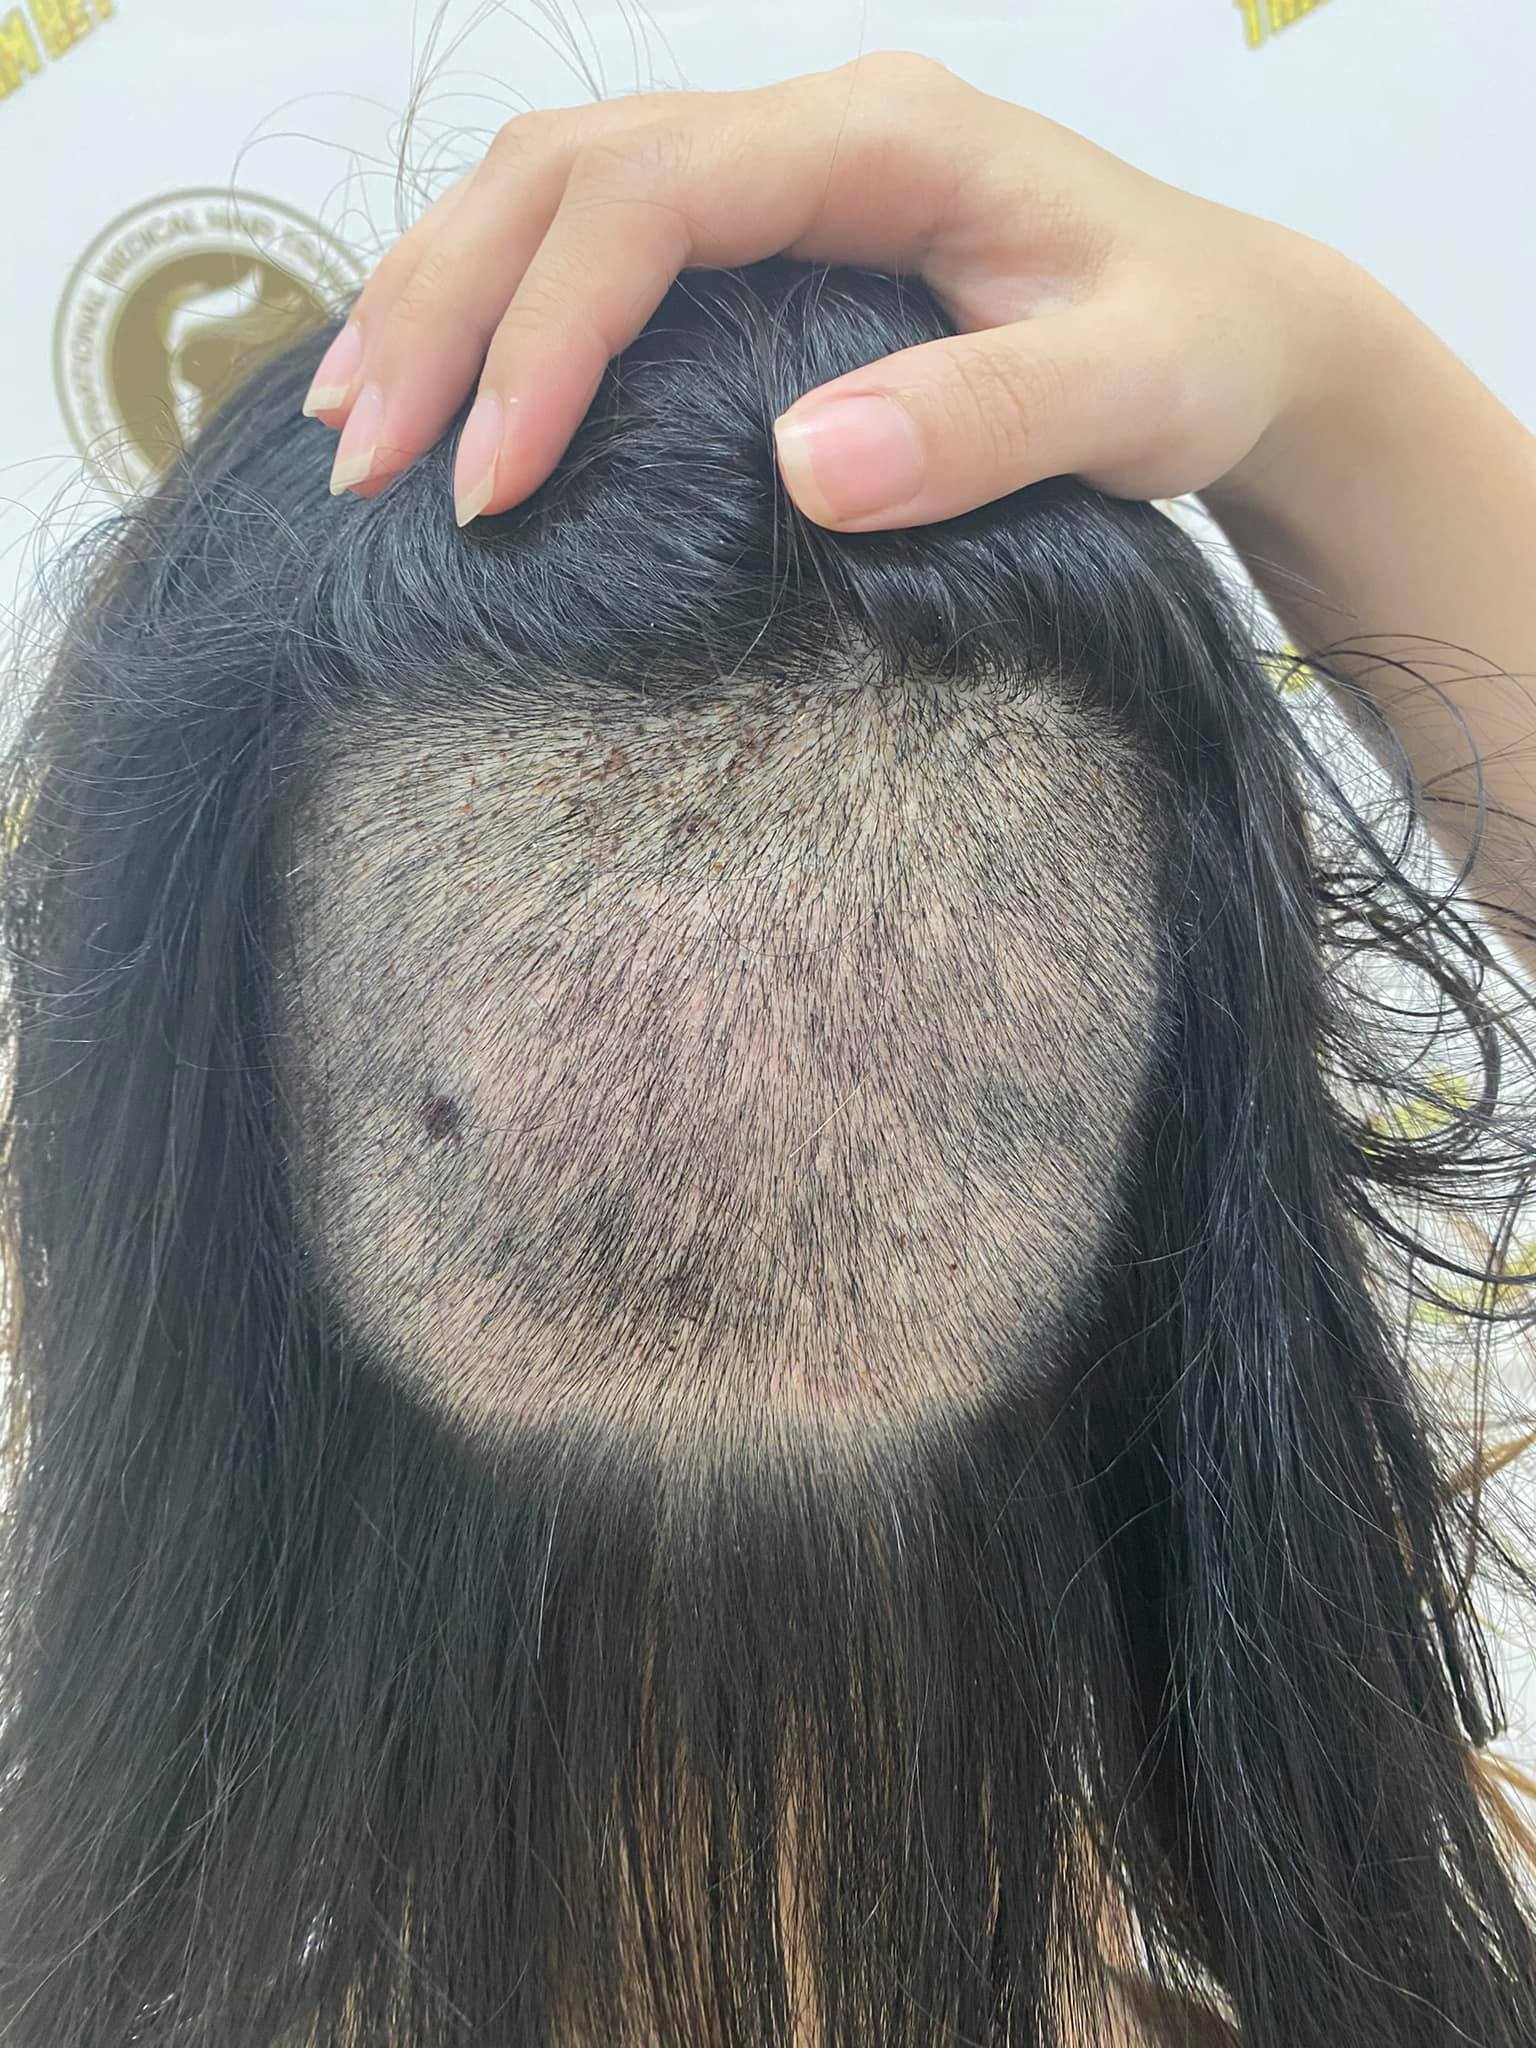 Chi 90 triệu để cấy 2cm tóc trị trán dô: Từng bất an cực độ vì tóc rụng lả tả, nhưng vài tháng sau lại cho kết quả mê ly không ngờ - Ảnh 3.